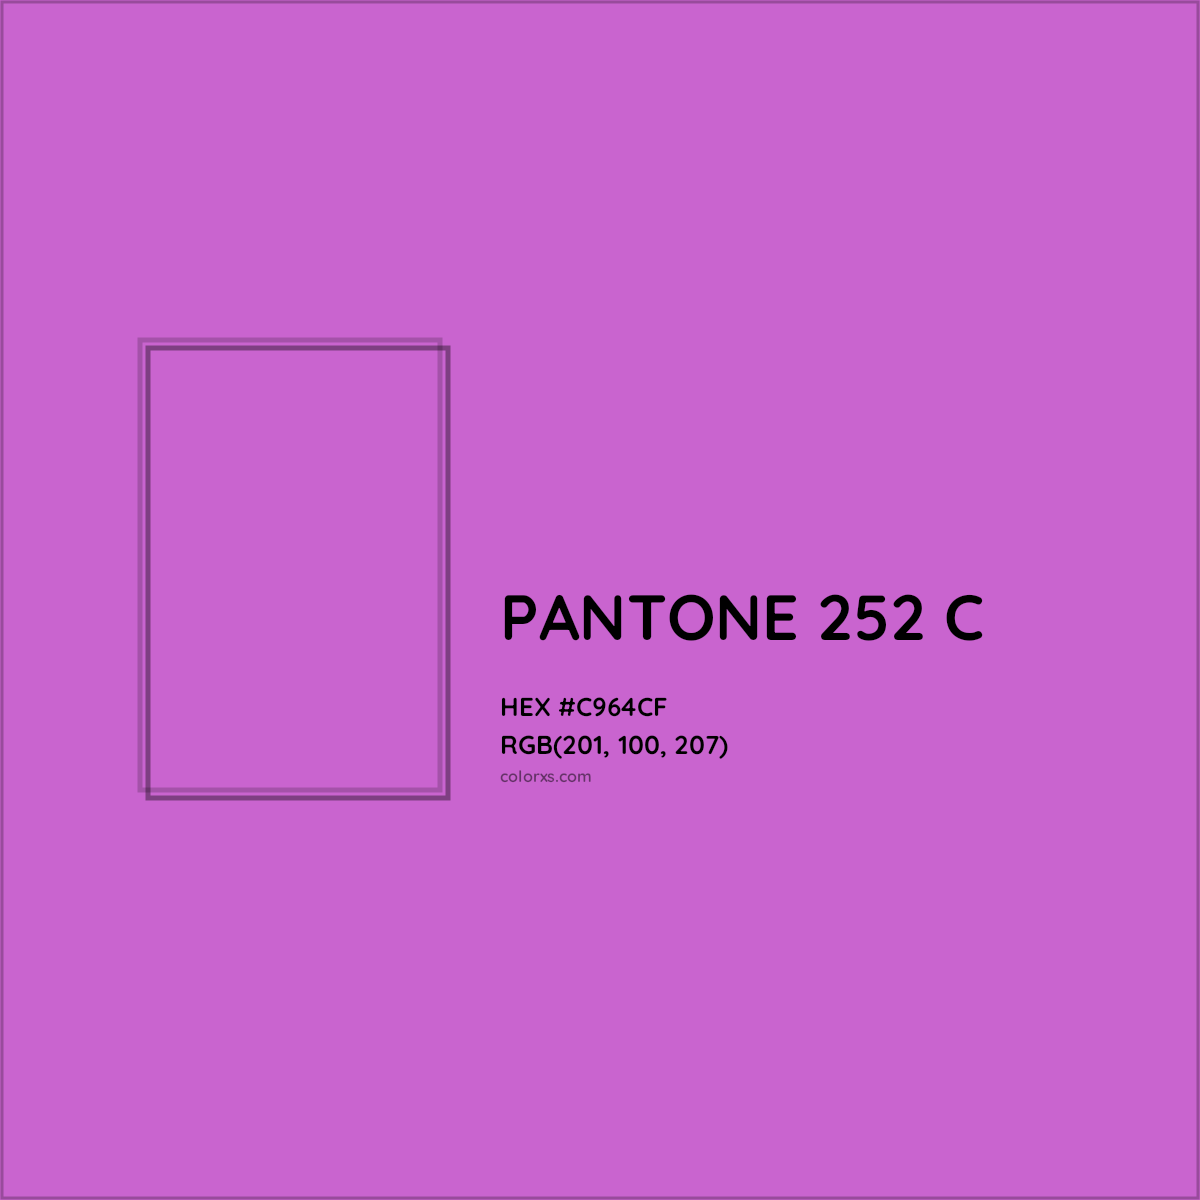 HEX #C964CF PANTONE 252 C CMS Pantone PMS - Color Code